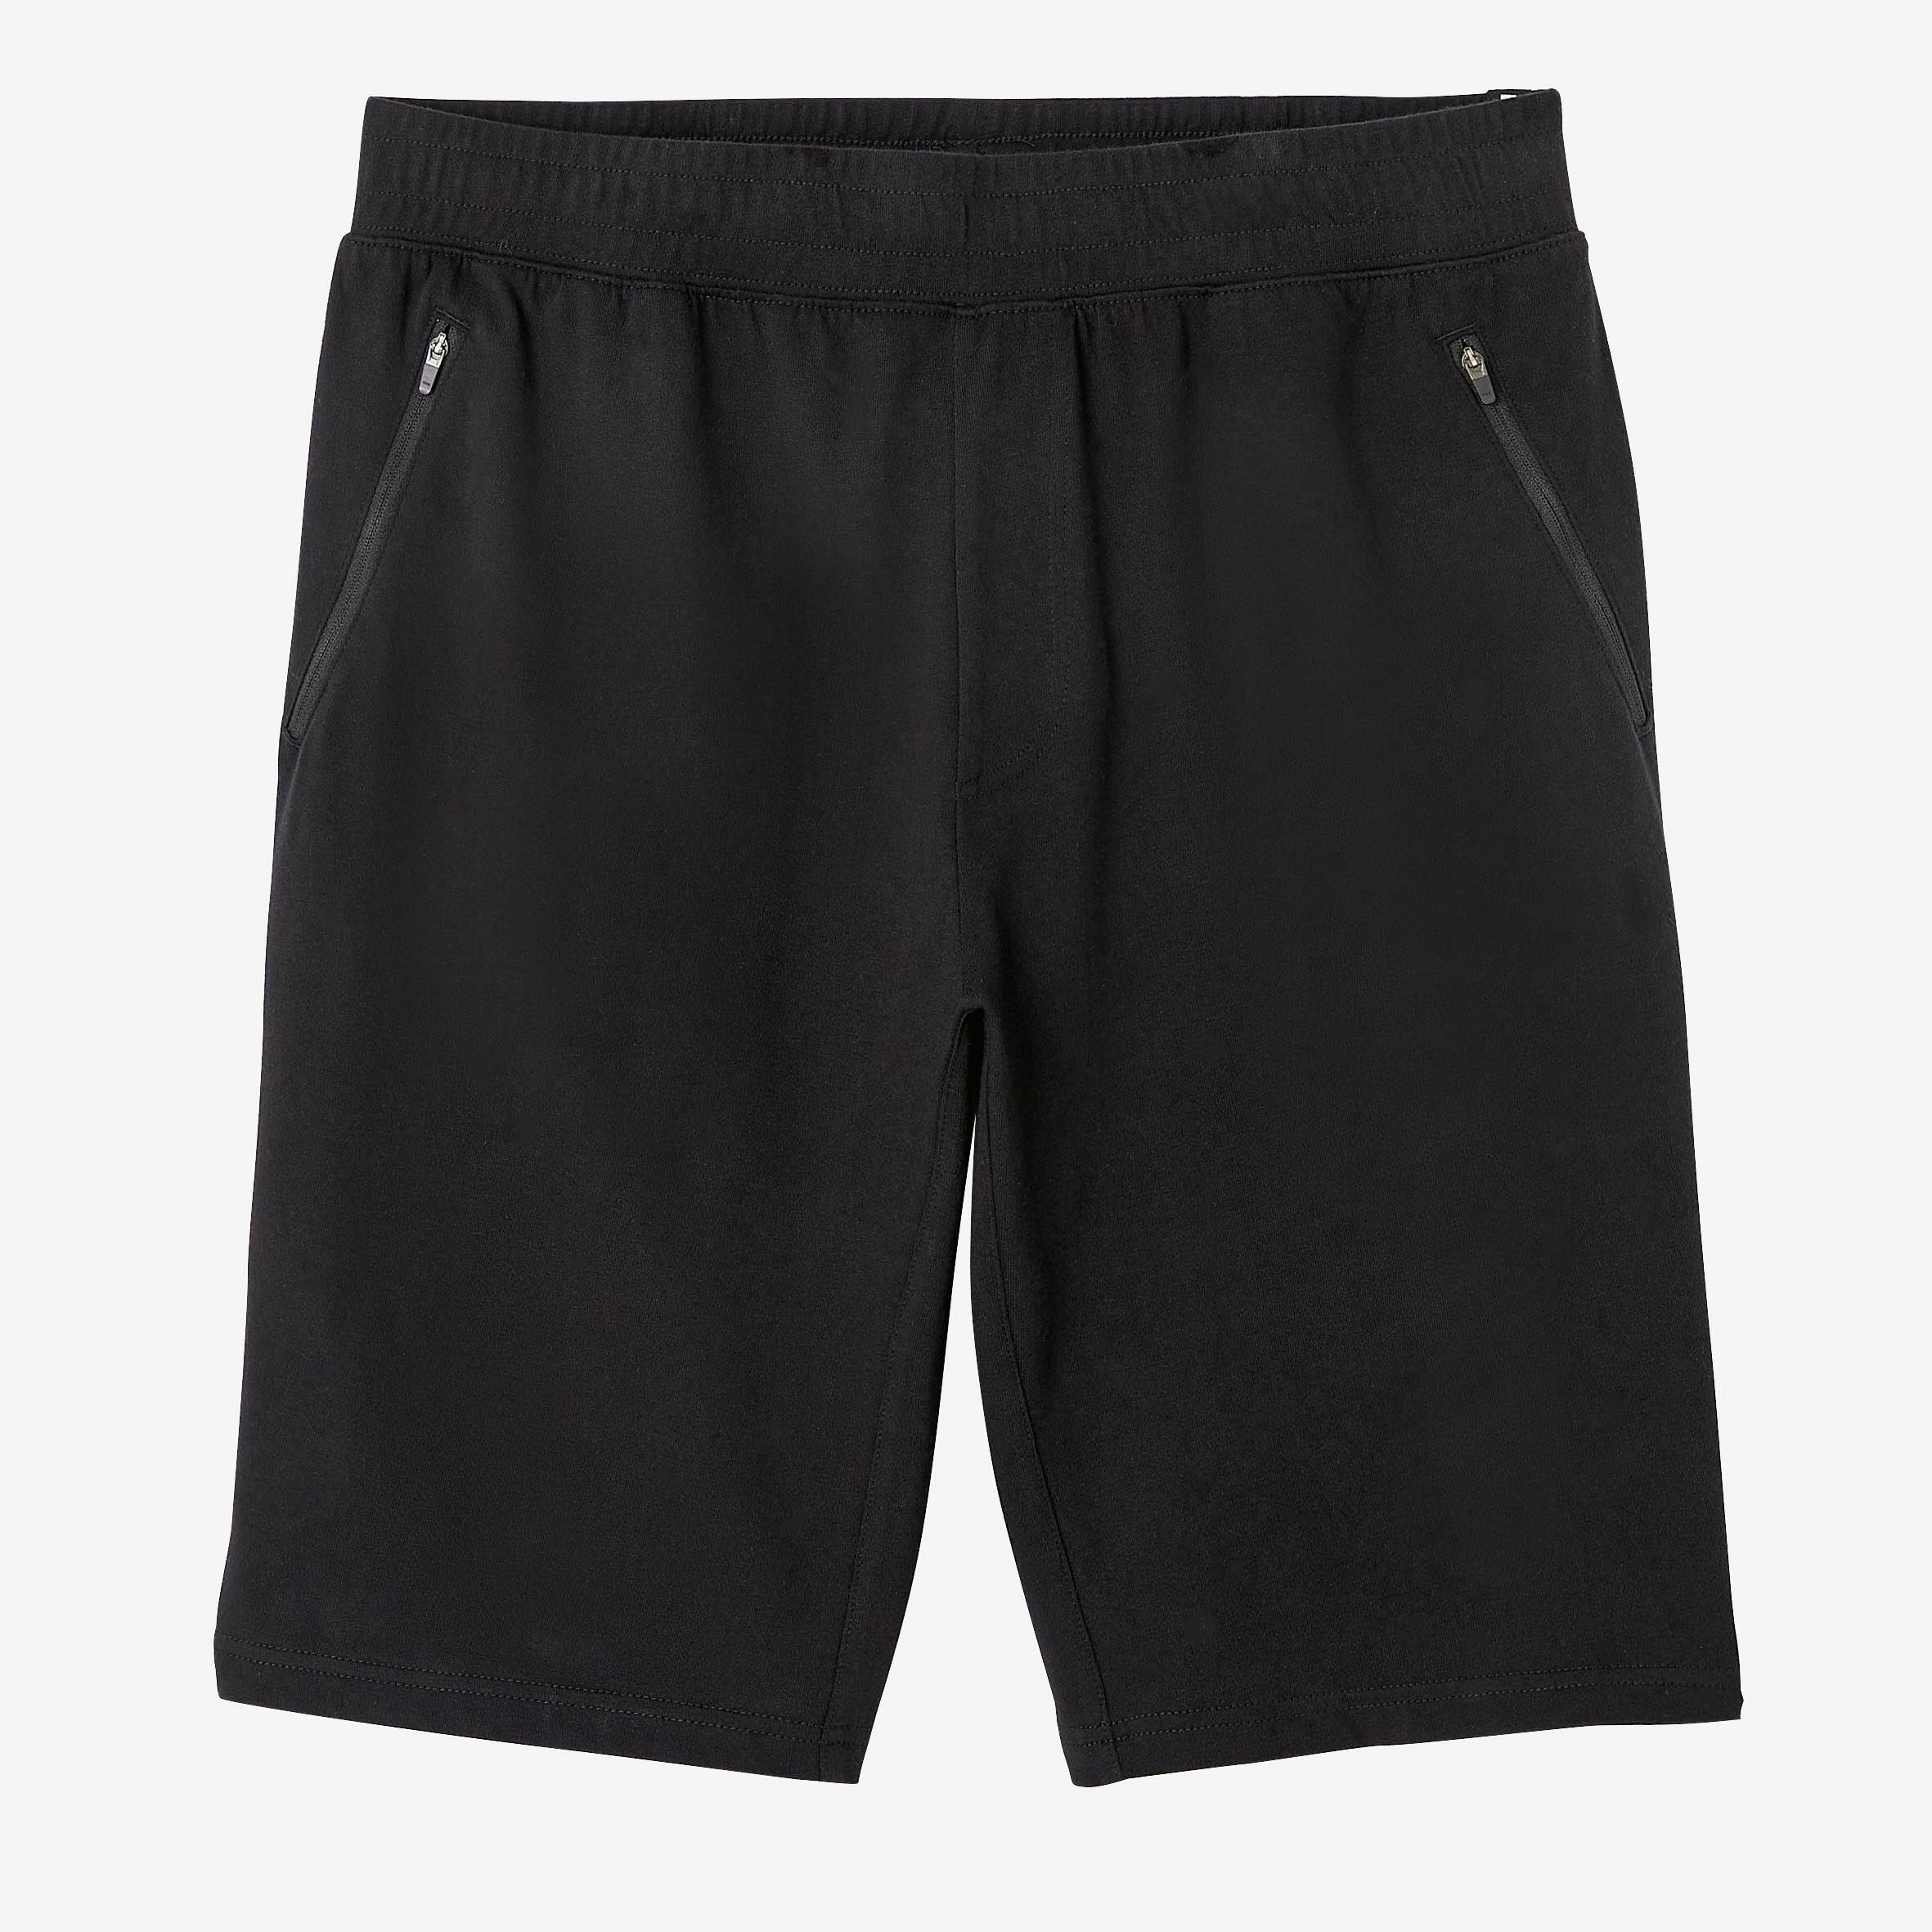 Men’s Fitness Shorts with Zipped Pockets - 520 Black - DOMYOS